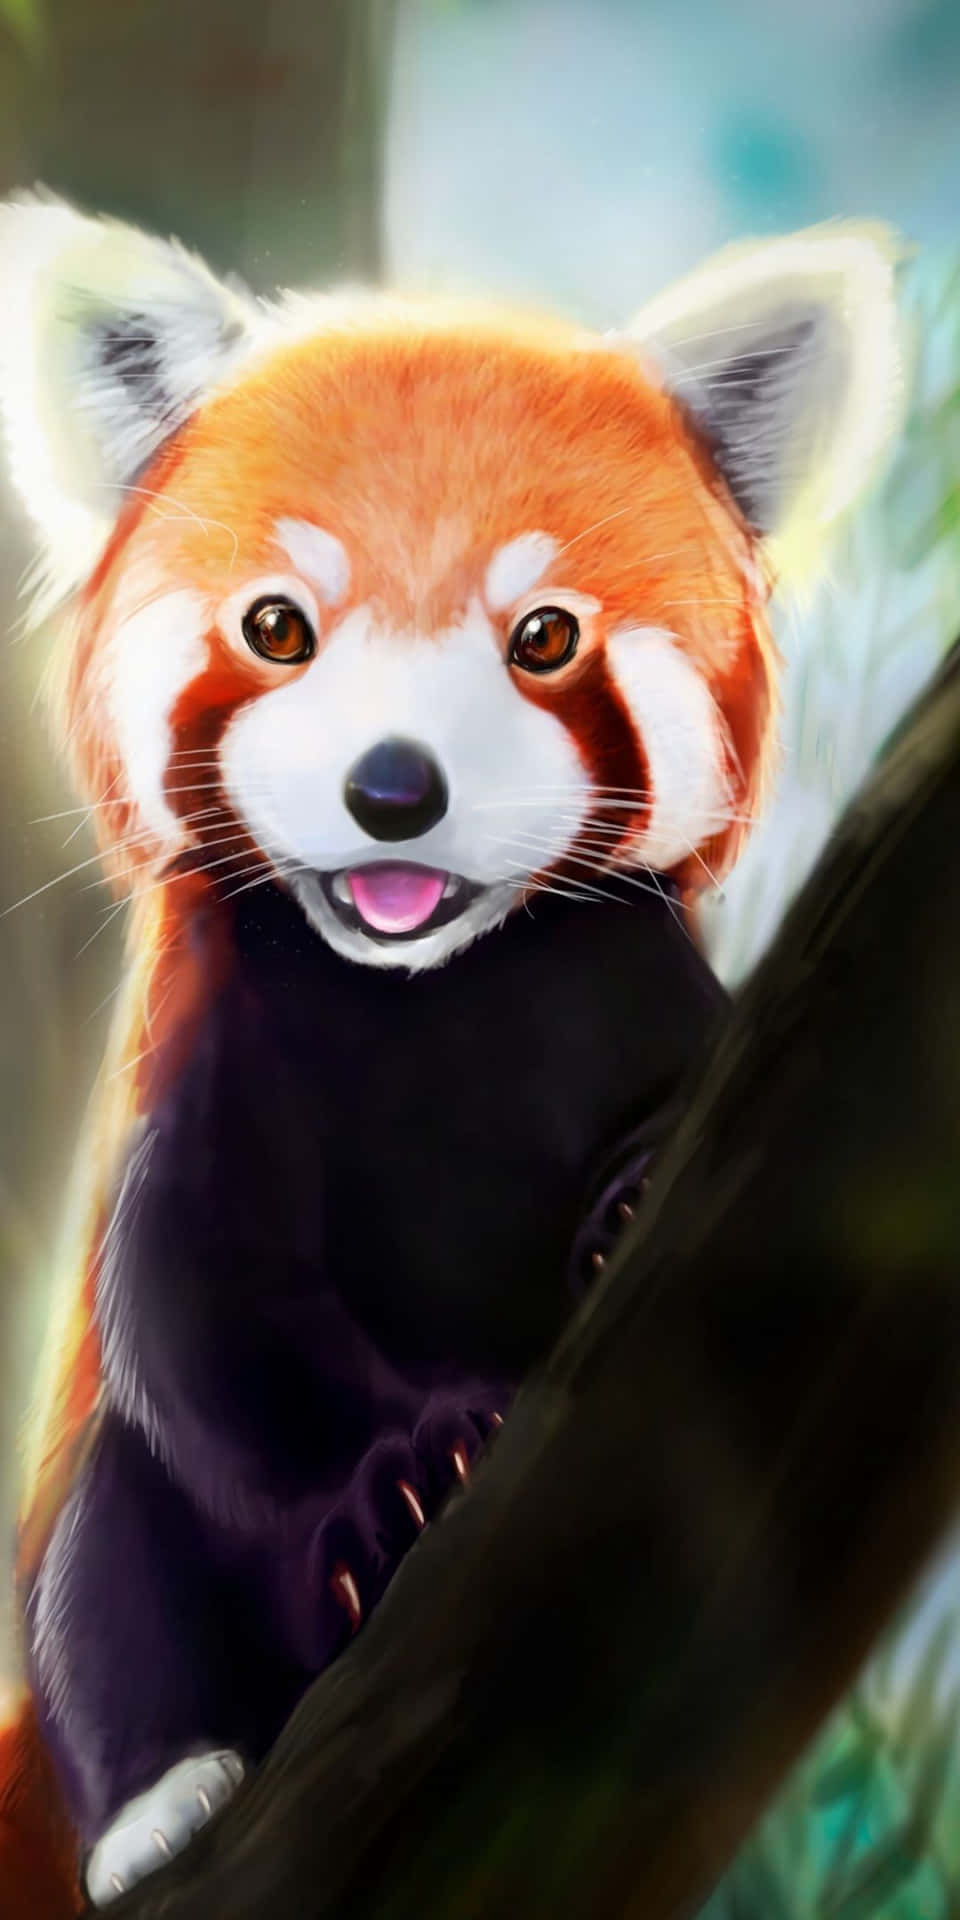 Look at this adorable Cute Red Panda! Wallpaper